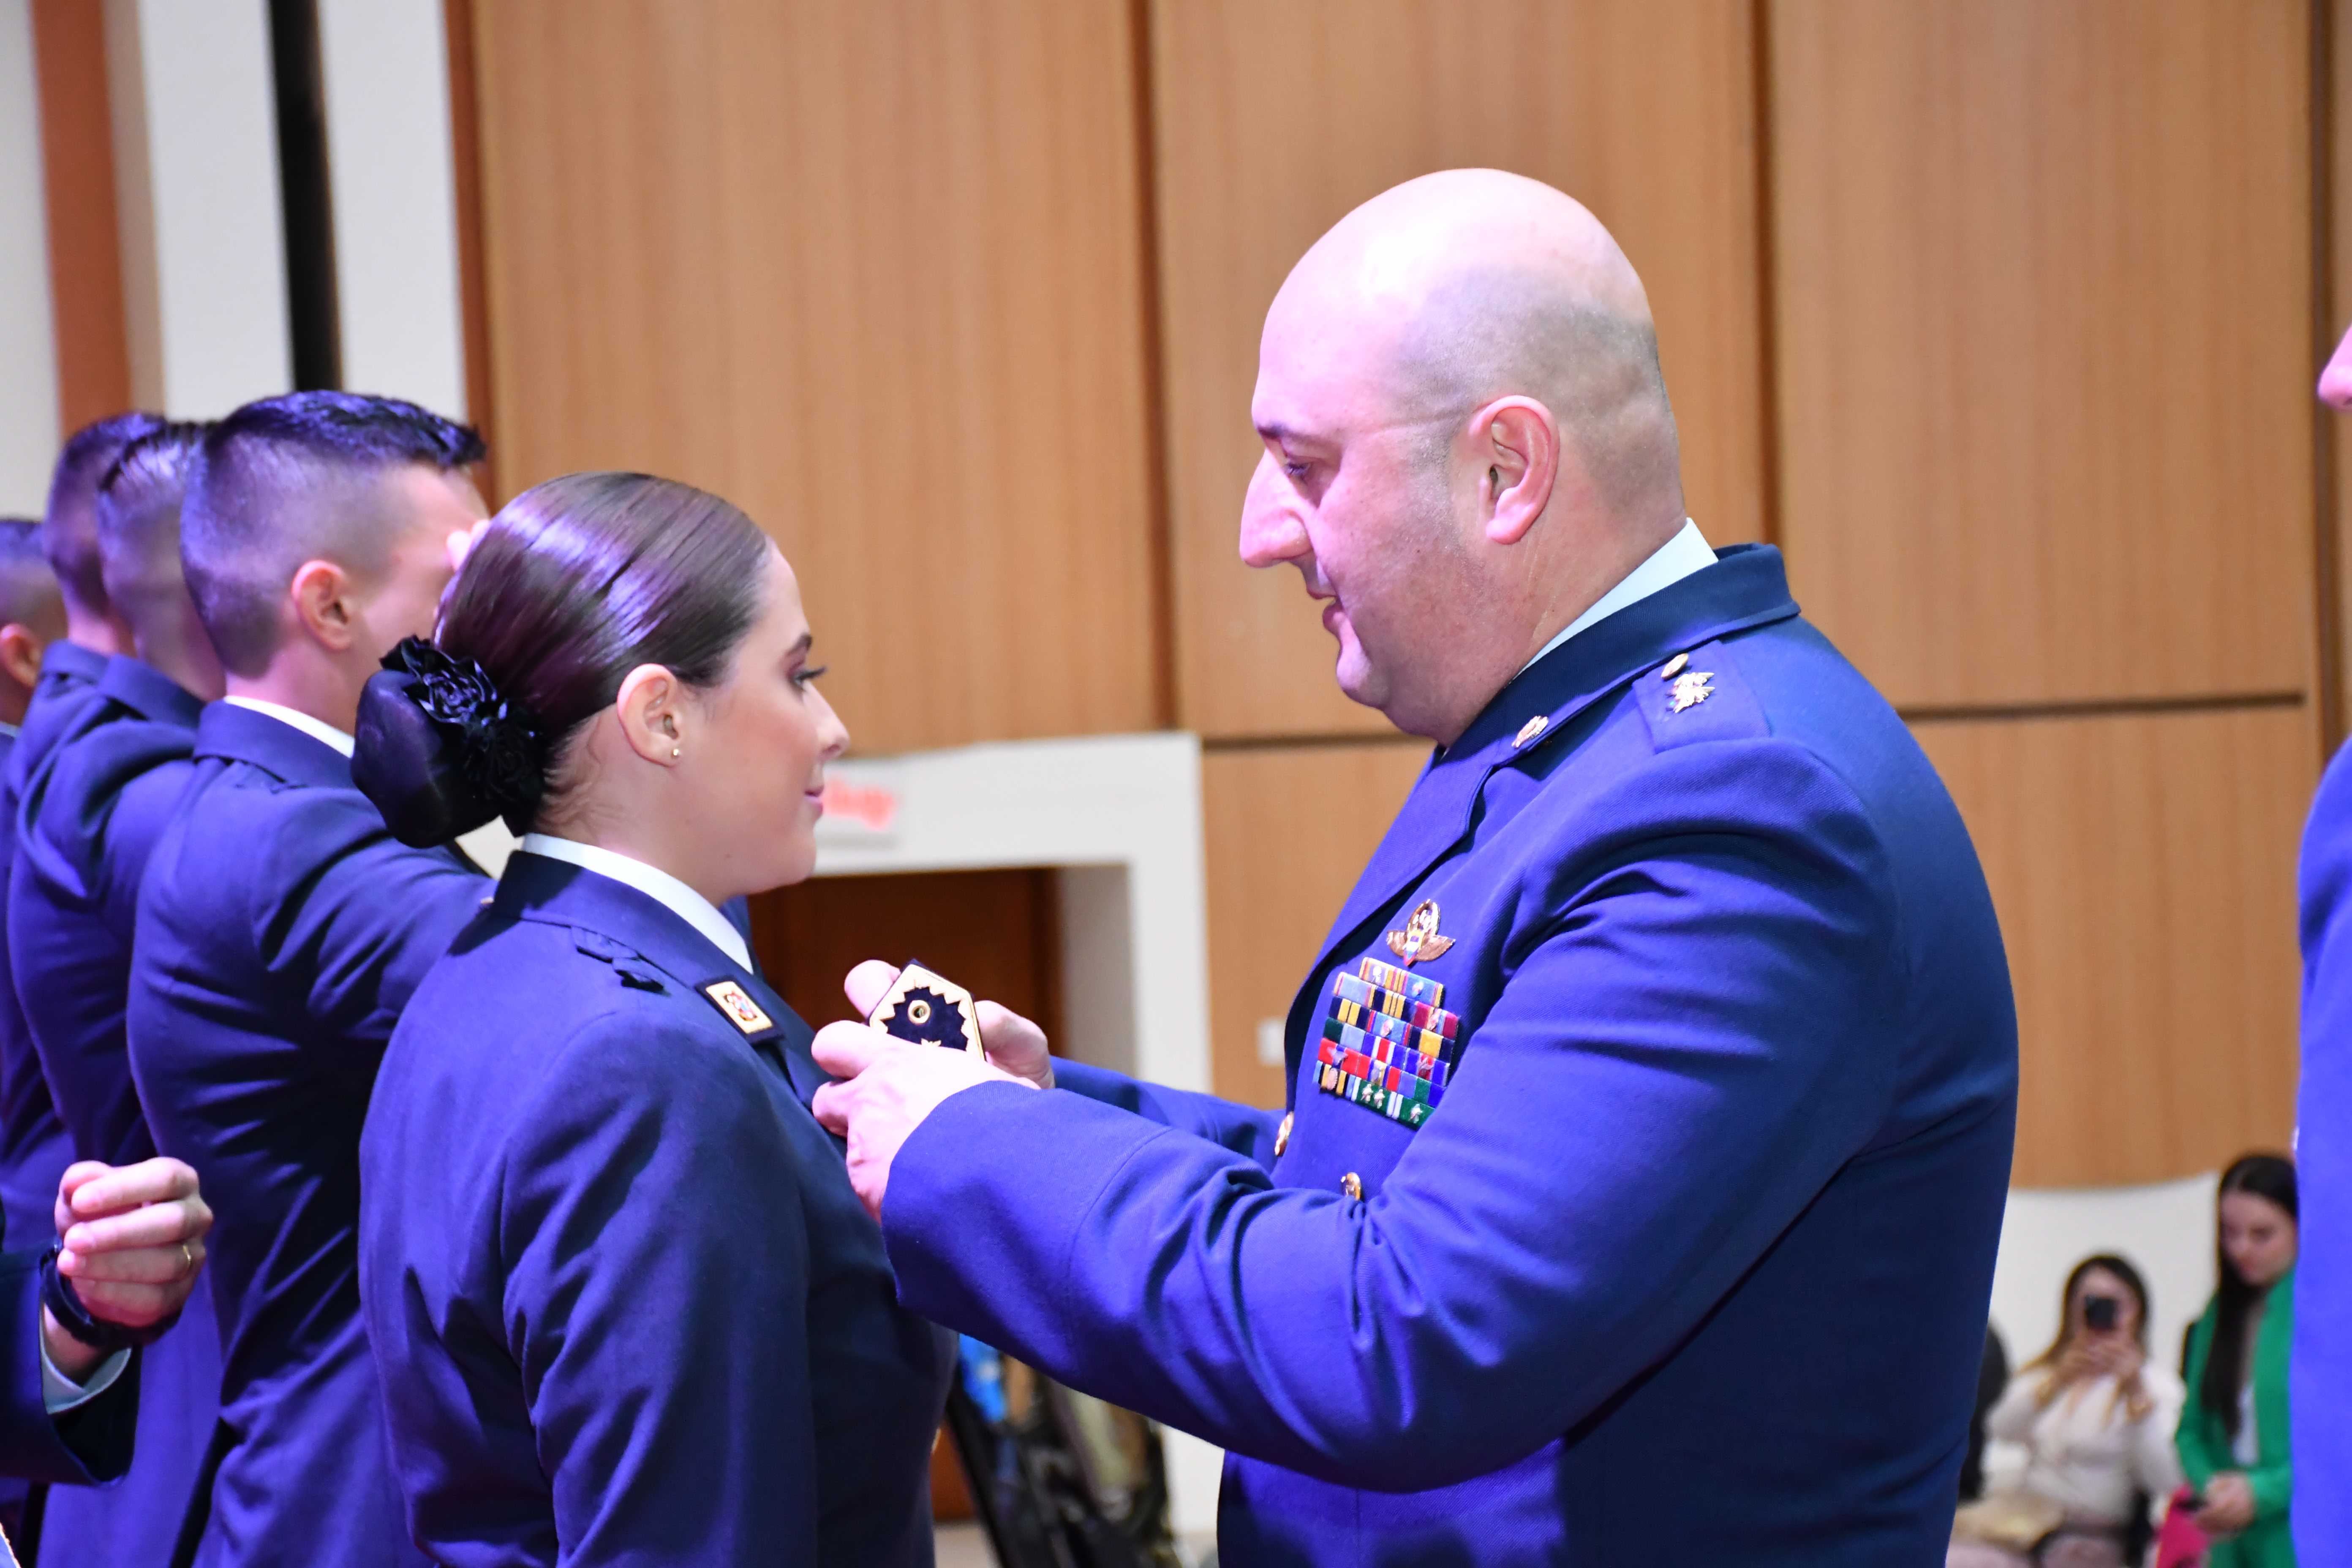 ¡Felicitaciones a los nuevos Subtenientes de la Fuerza Aérea Colombiana!